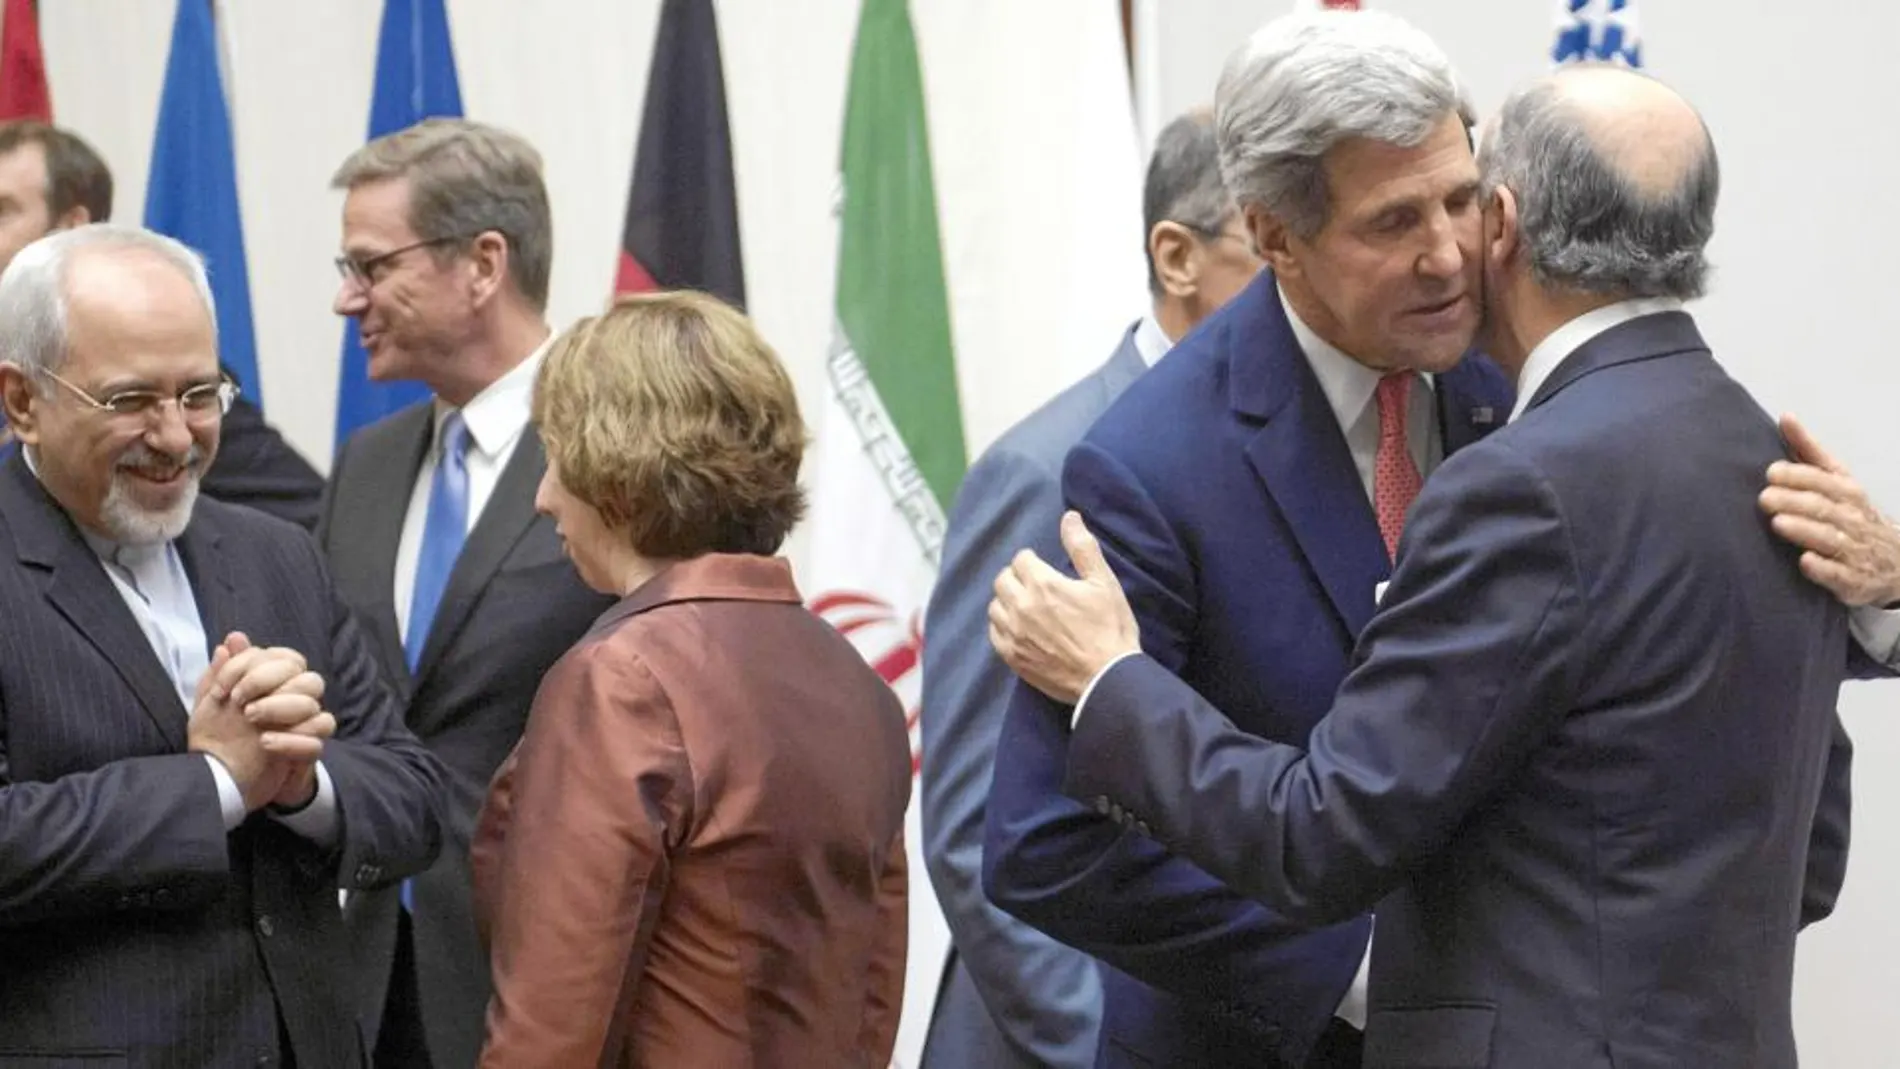 EL ABRAZO. Kerry y Fabius se dan un abrazo frente a Ashton con el el negociador iraní, Zarif, tras cerrar el pacto de mínimos